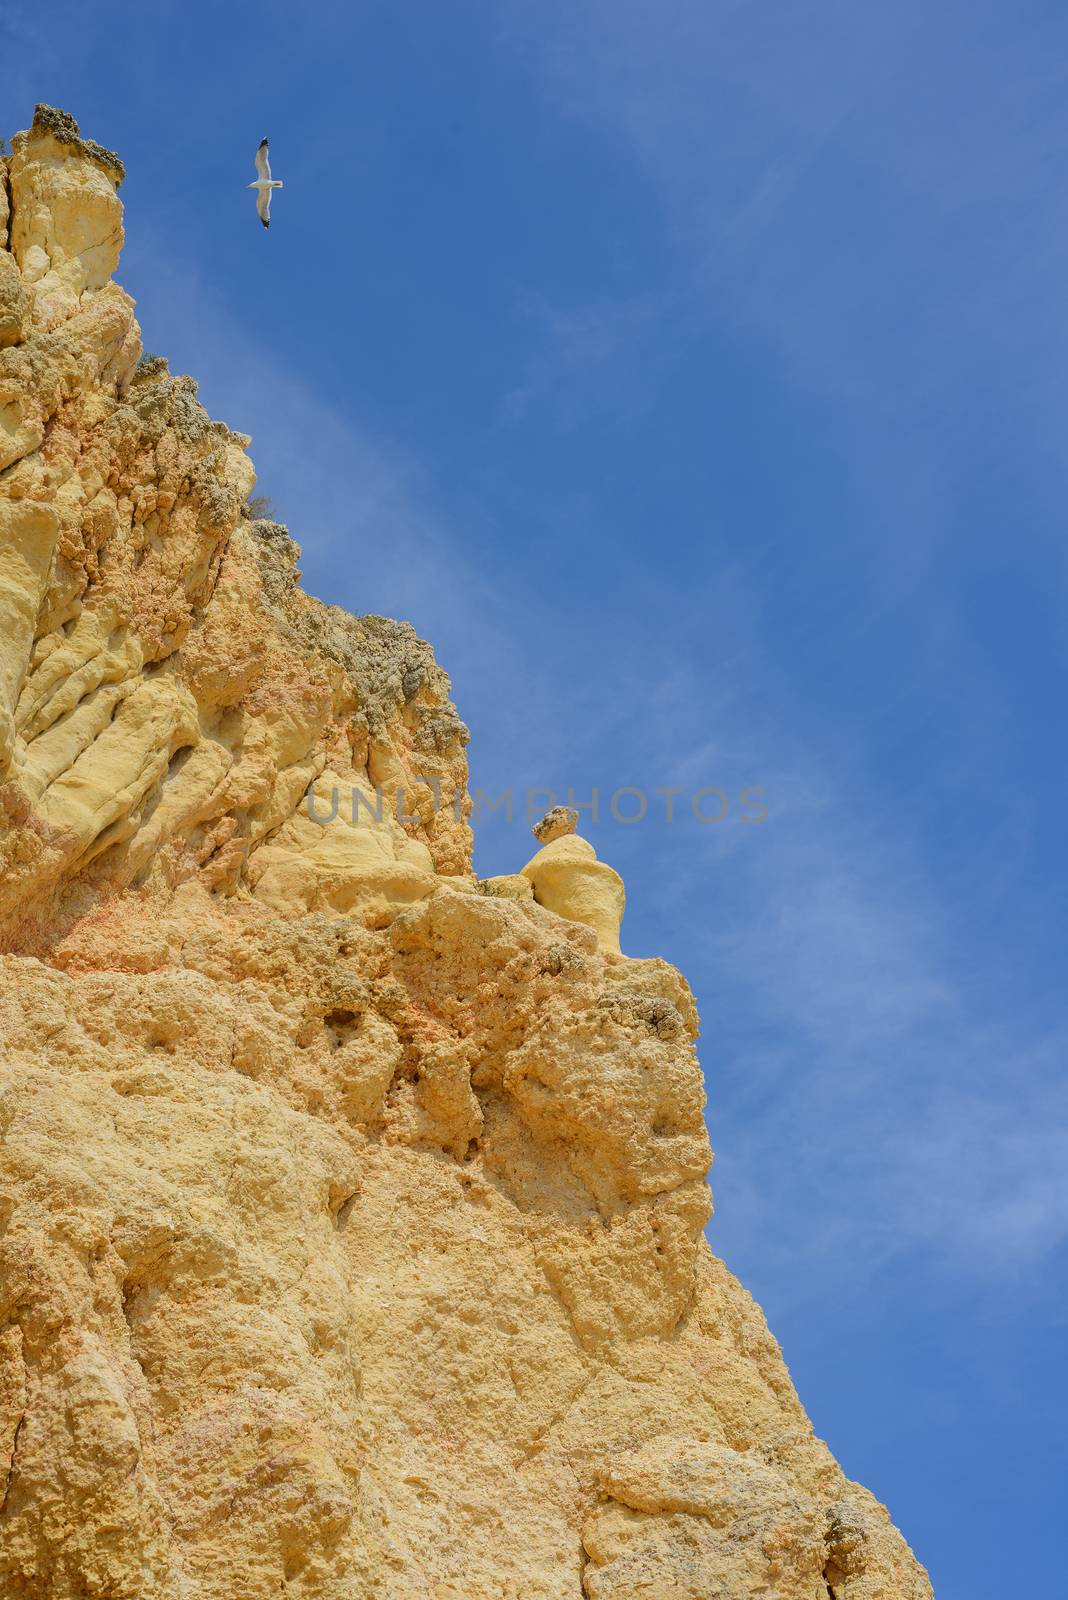 Golden rock cliffs with blue sky and bird